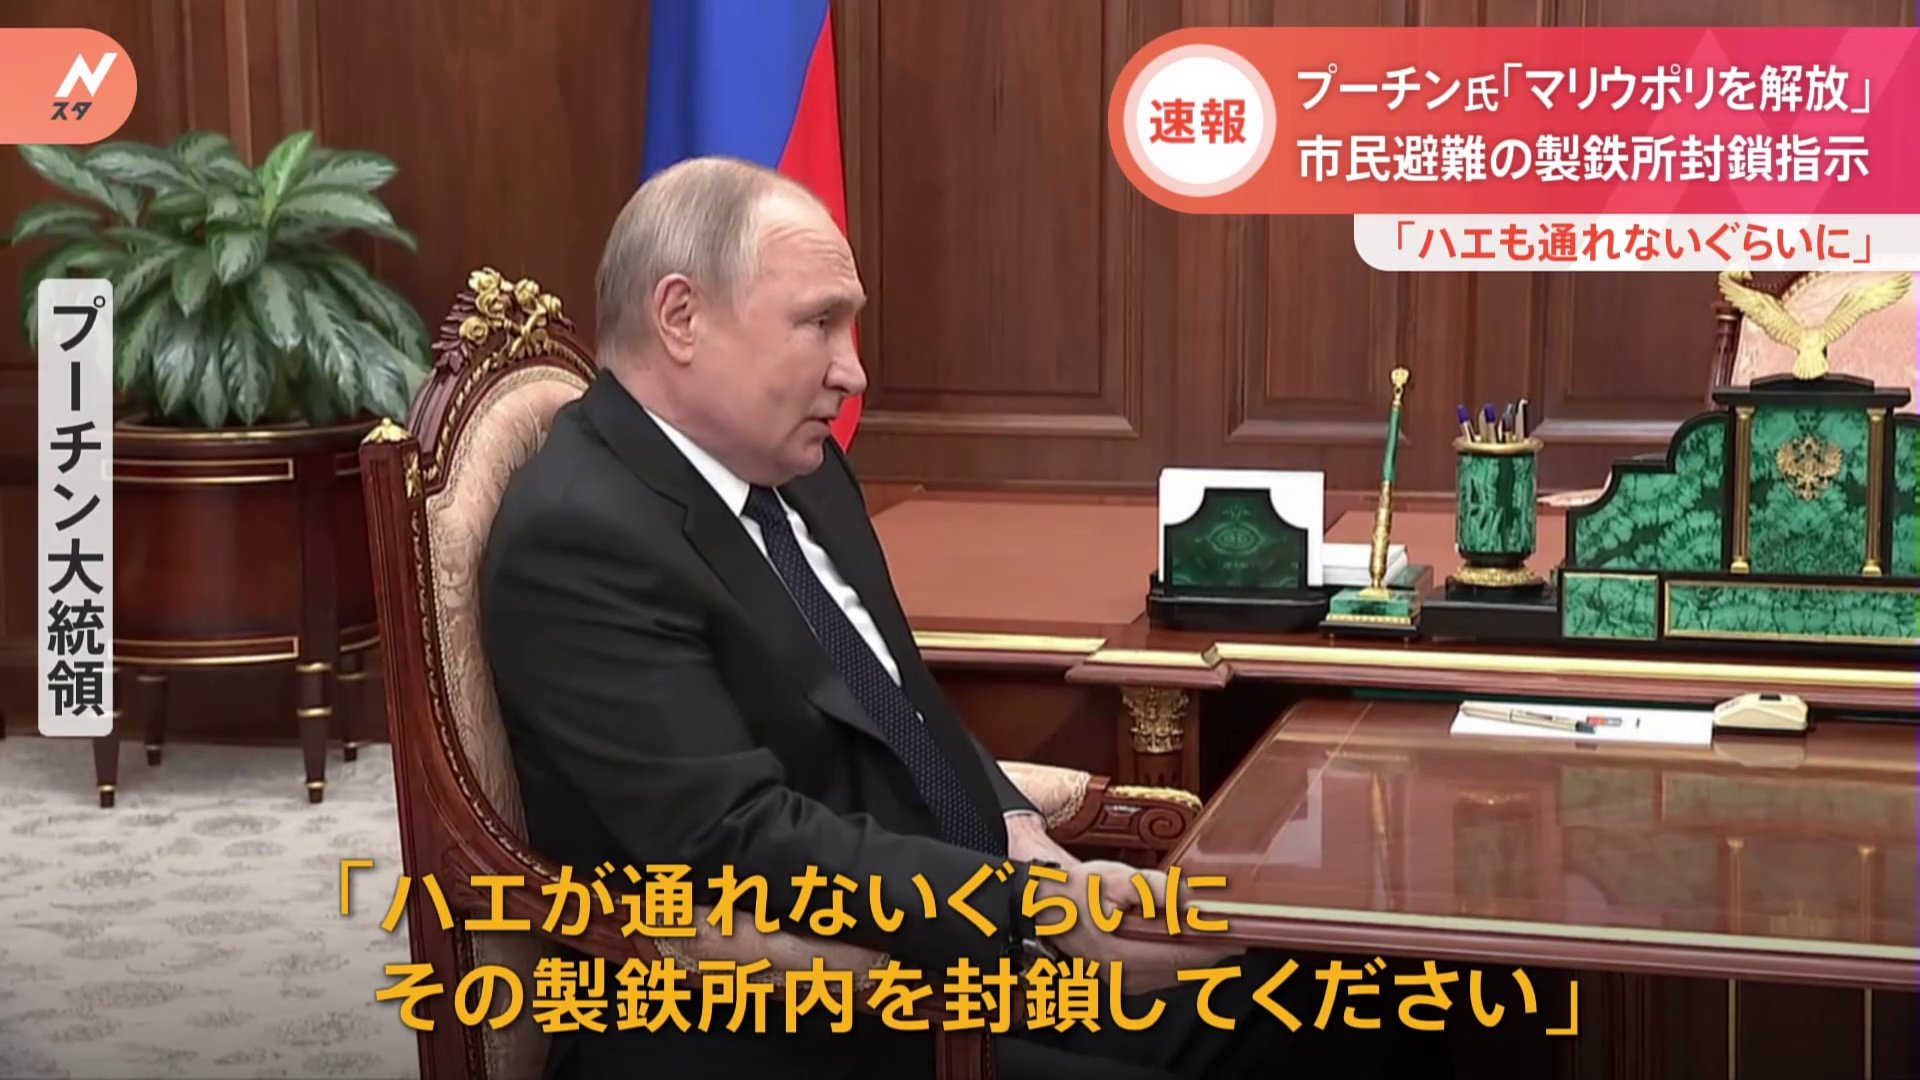 マリウポリ「解放作戦は成功した」 ロシア・プーチン大統領 事実上制圧の考え示す 製鉄所から「ハエ1匹も出すな」